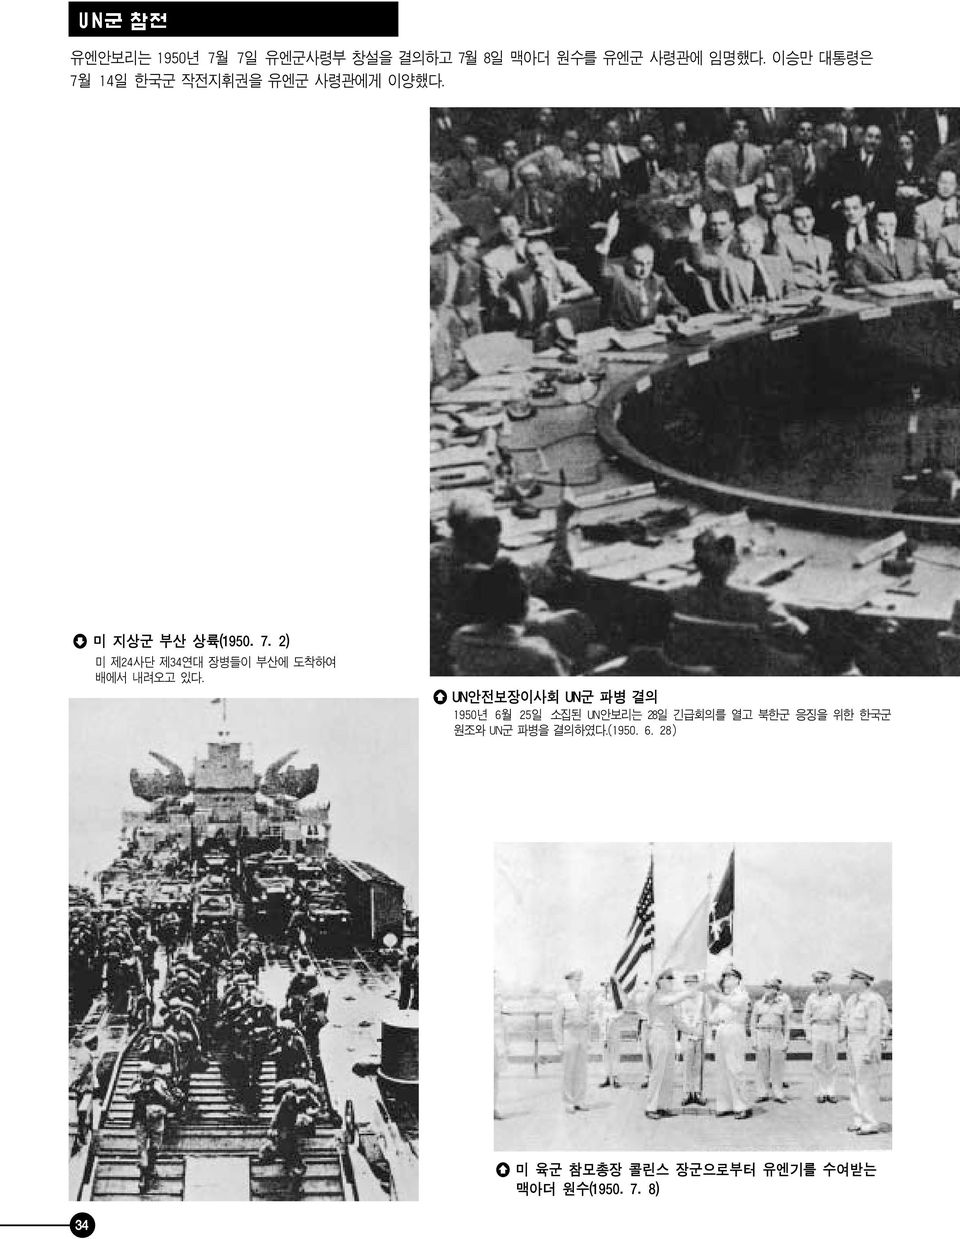 UN 안전보장이사회 UN 군파병결의 1950 년 6 월 25 일소집된 UN 안보리는 28 일긴급회의를열고북한군응징을위한한국군원조와 UN